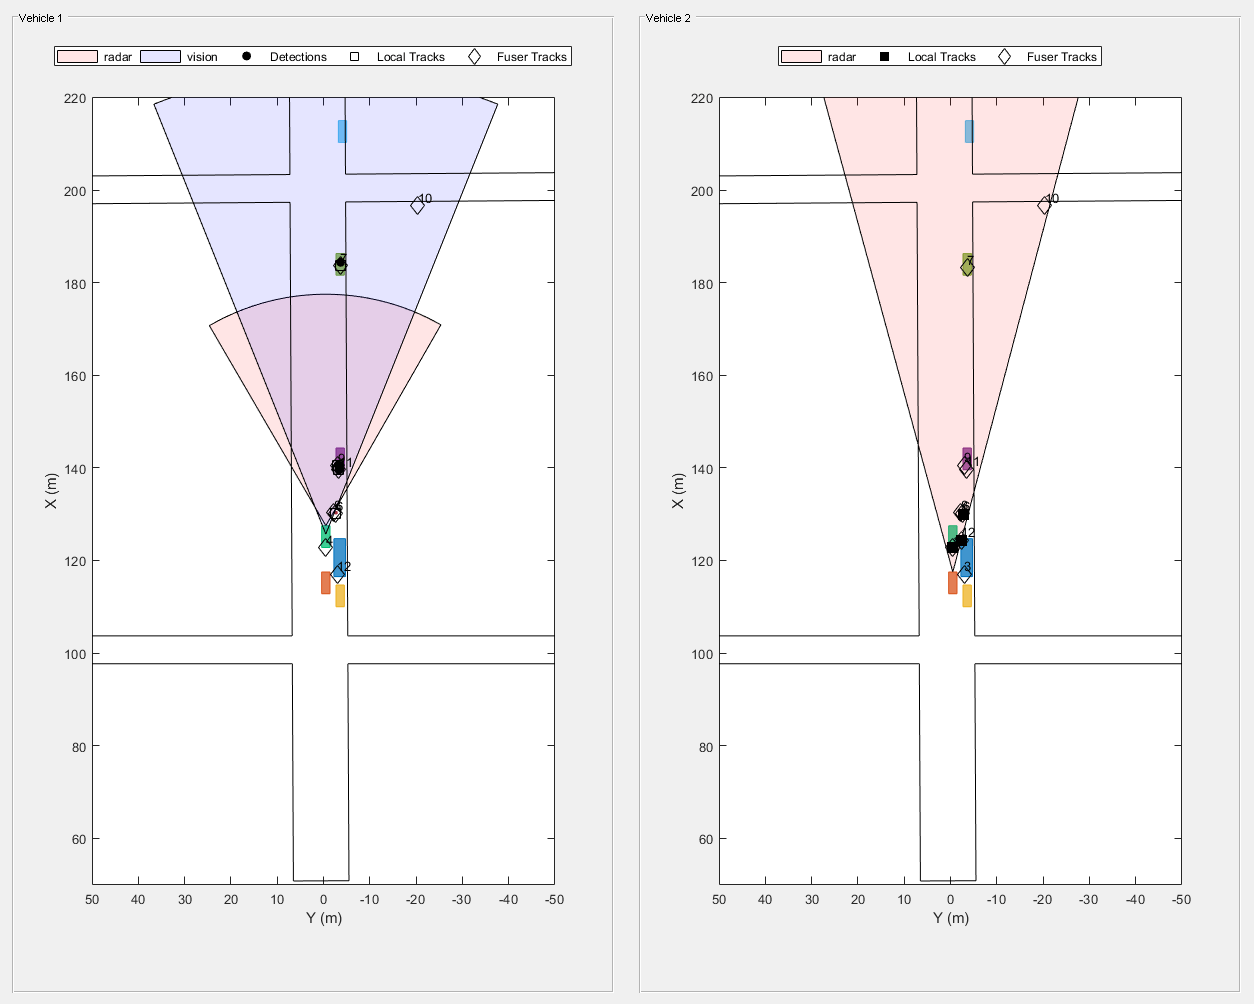 图Snap #3包含2个轴对象和其他uipanel类型的对象。坐标轴对象1与xlabel X (m)， ylabel Y (m)包含13个类型为patch, line, text的对象。其中一条或多条线仅使用标记显示其值。这些对象表示雷达、视觉、探测、本地轨迹、Fuser轨迹。坐标轴对象2与xlabel X (m)， ylabel Y (m)包含12个类型为patch, line, text的对象。其中一条或多条线仅使用标记显示其值。这些对象表示雷达、本地轨迹、Fuser轨迹。